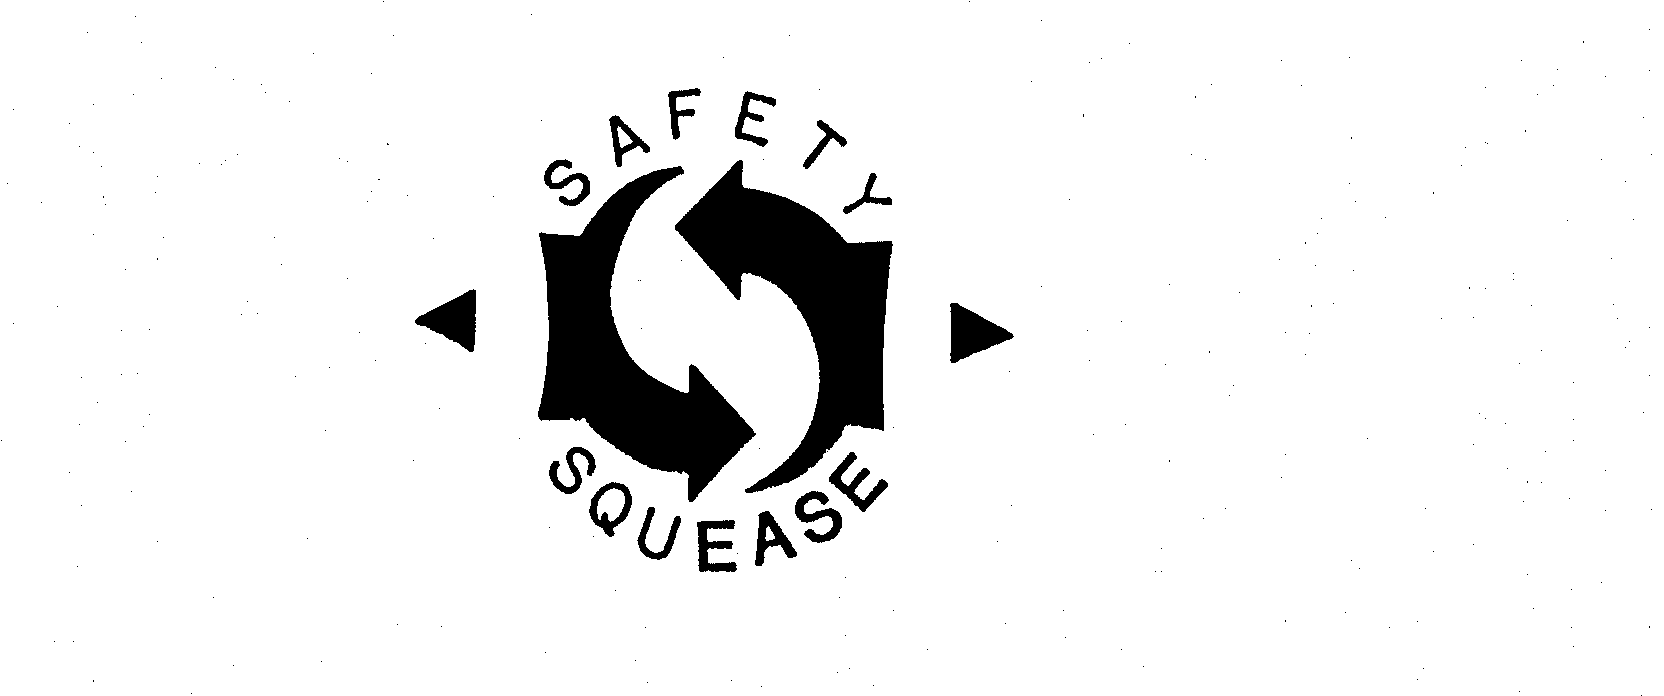  SAFETY SQUEASE